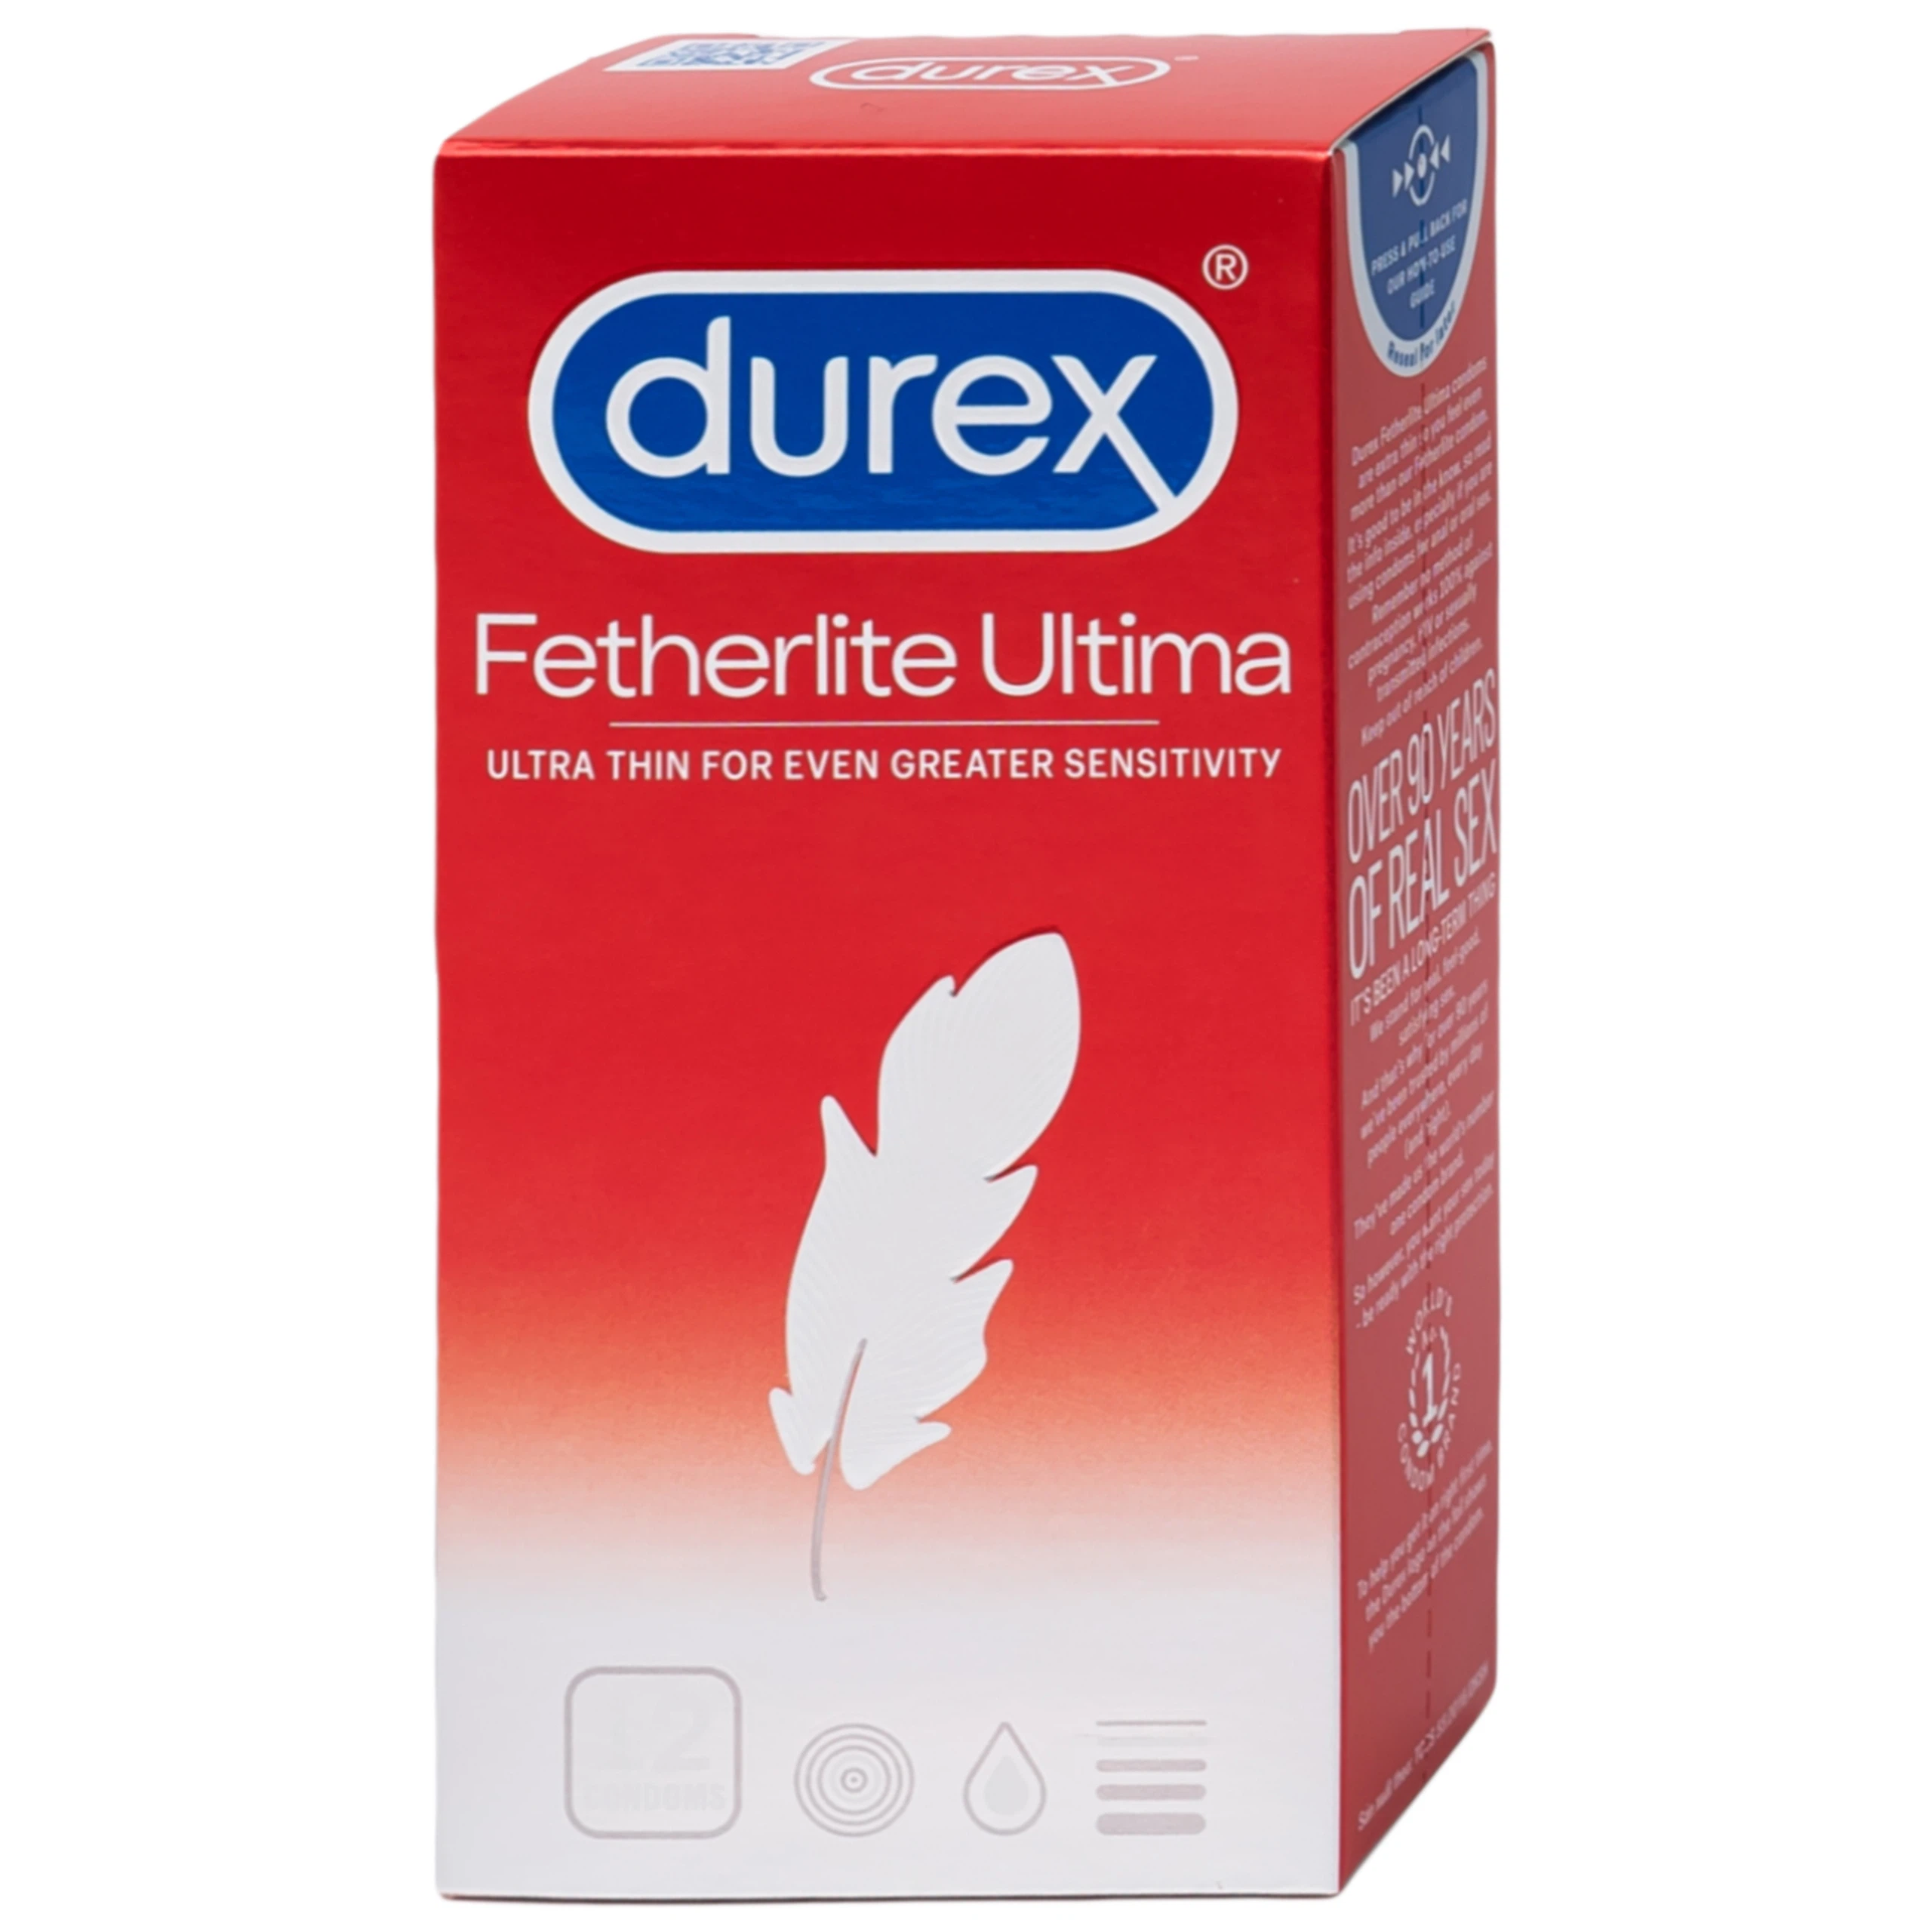 Bao cao su Durex Fetherlite Ultima siêu mỏng dùng tránh thai và các bệnh lây nhiễm (12 cái)